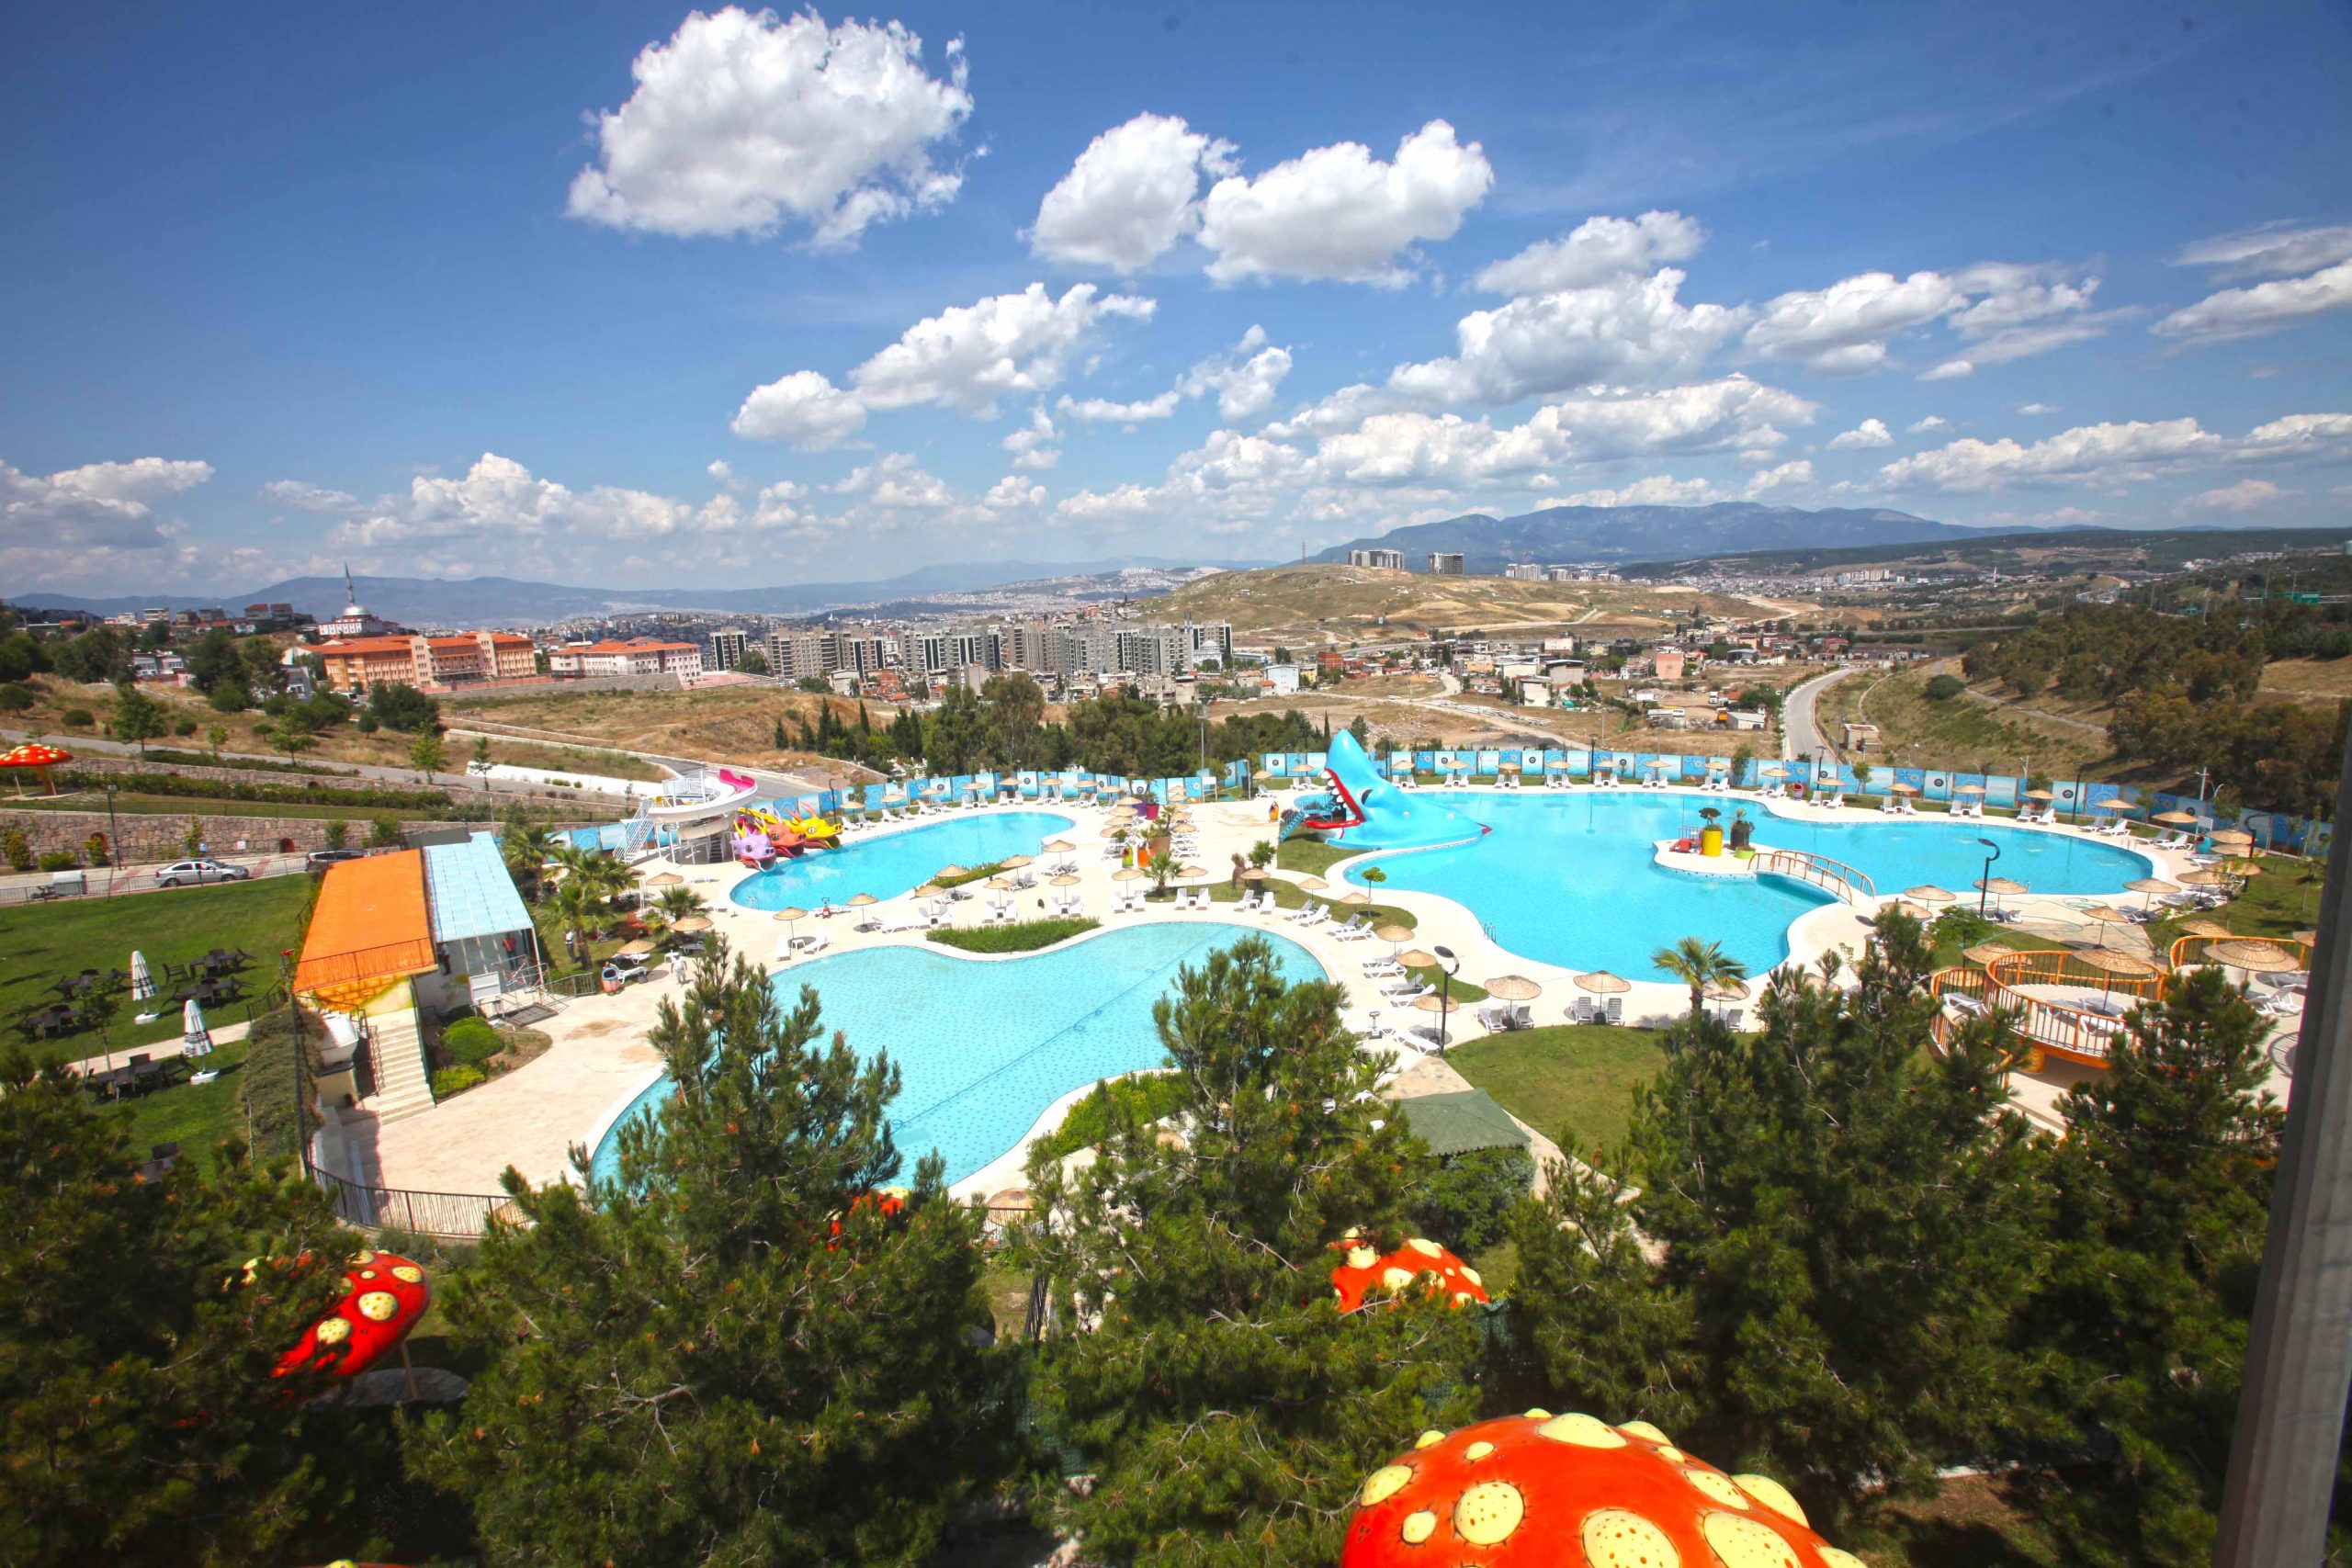 Karabağlar Belediyesi’nin yüzme havuzları ve kafetaryası bu yaz da yoğun ilgi gördü.